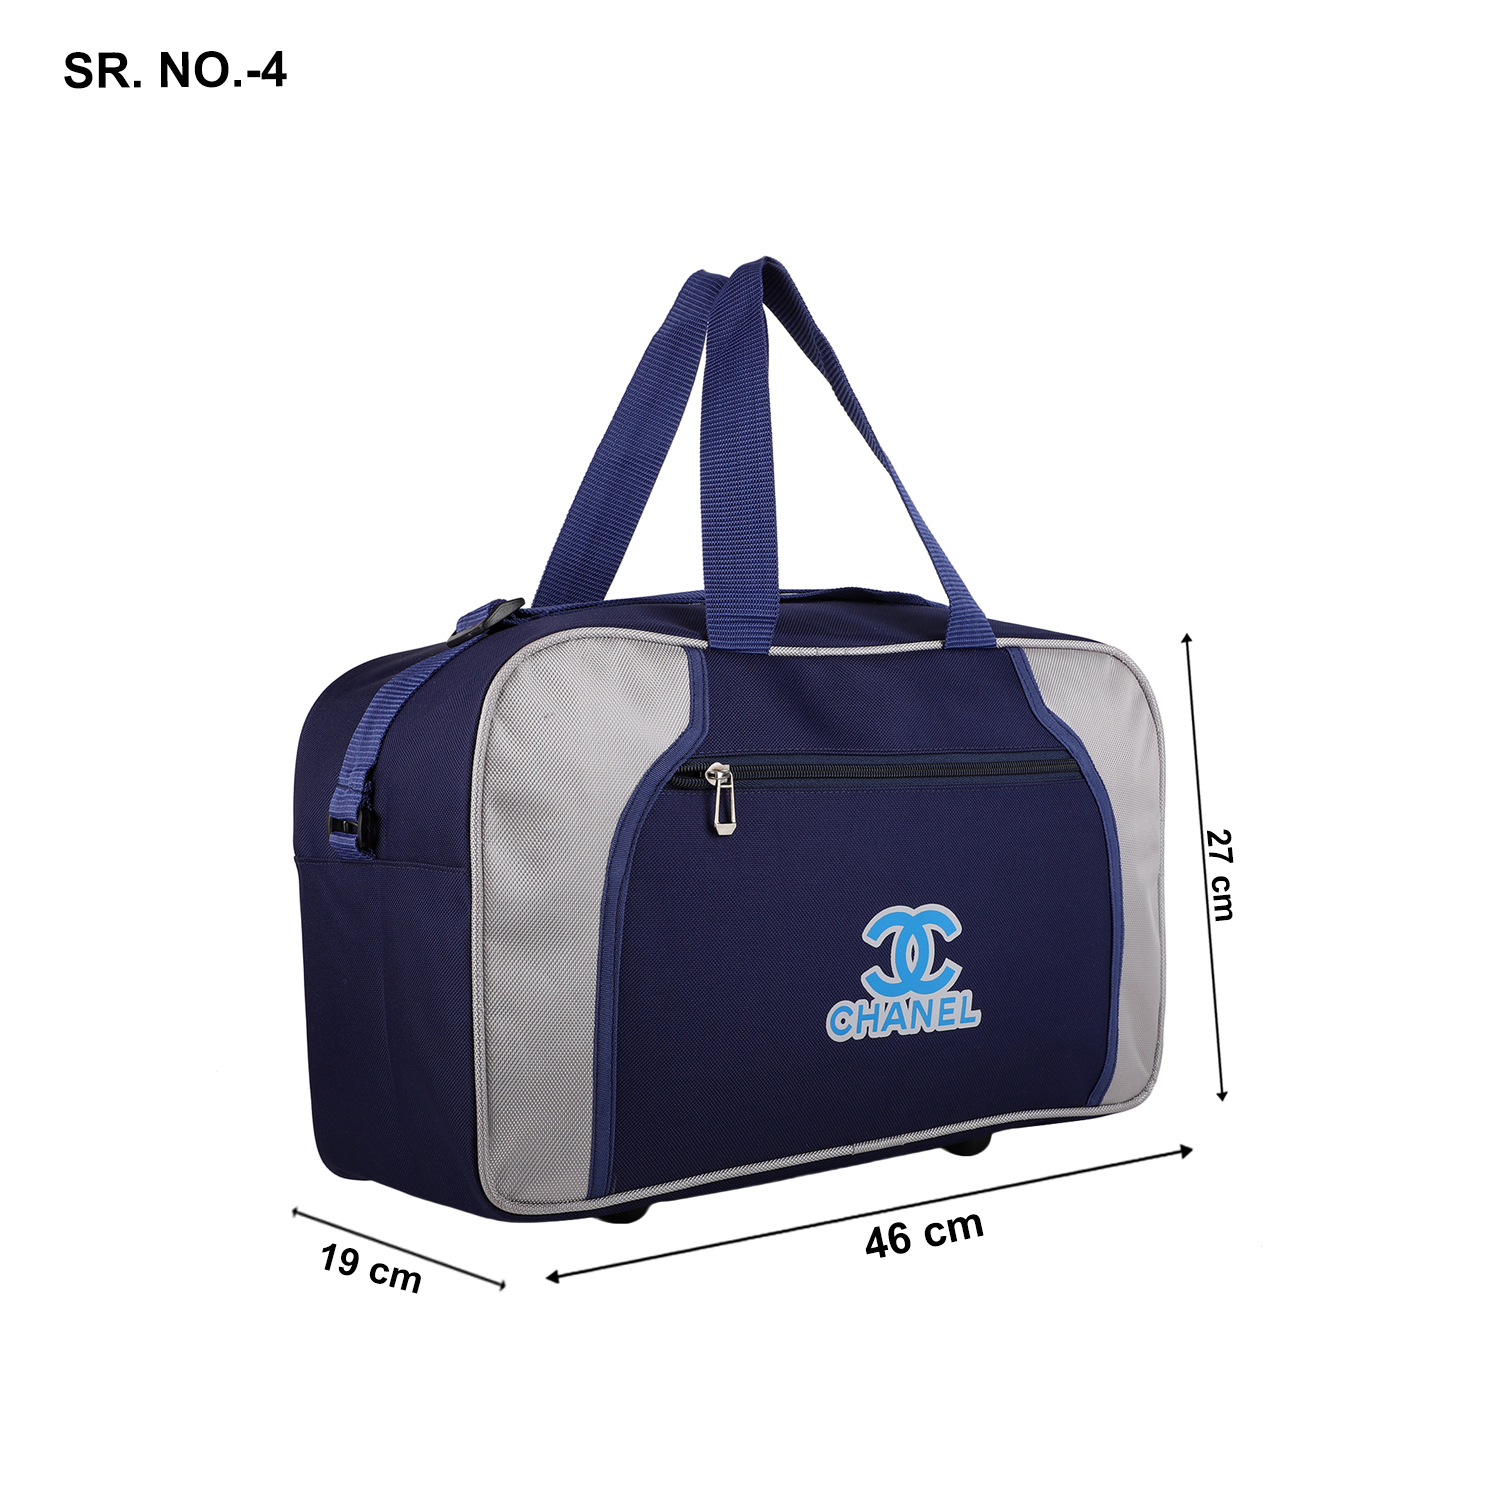 Promotional Duffle Luggage Bag